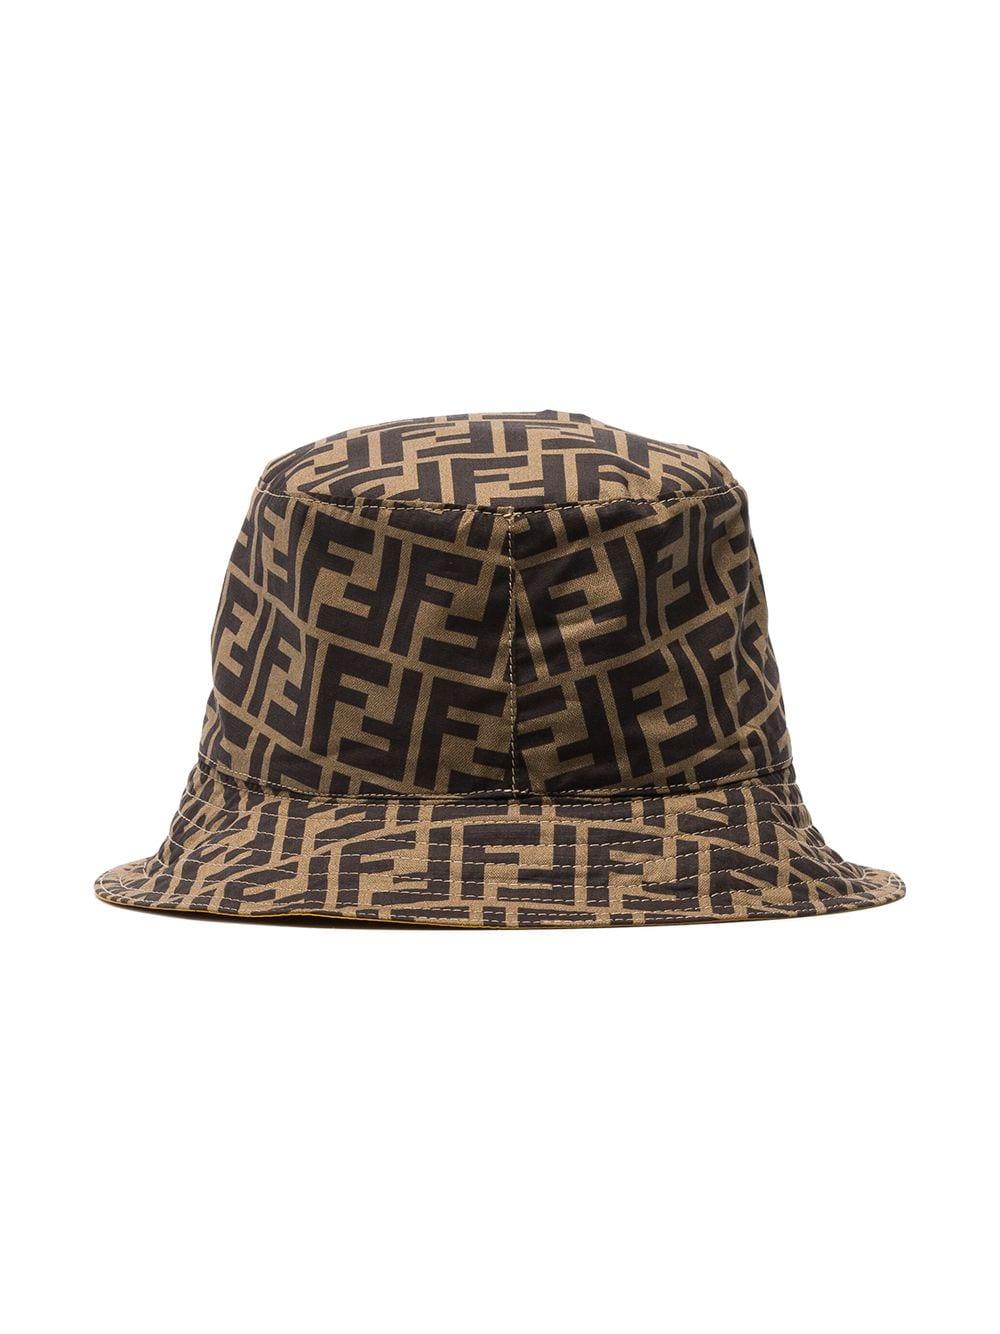 Fendi Cotton Double F Inside Pocket Bucket Hat in Brown for Men - Lyst